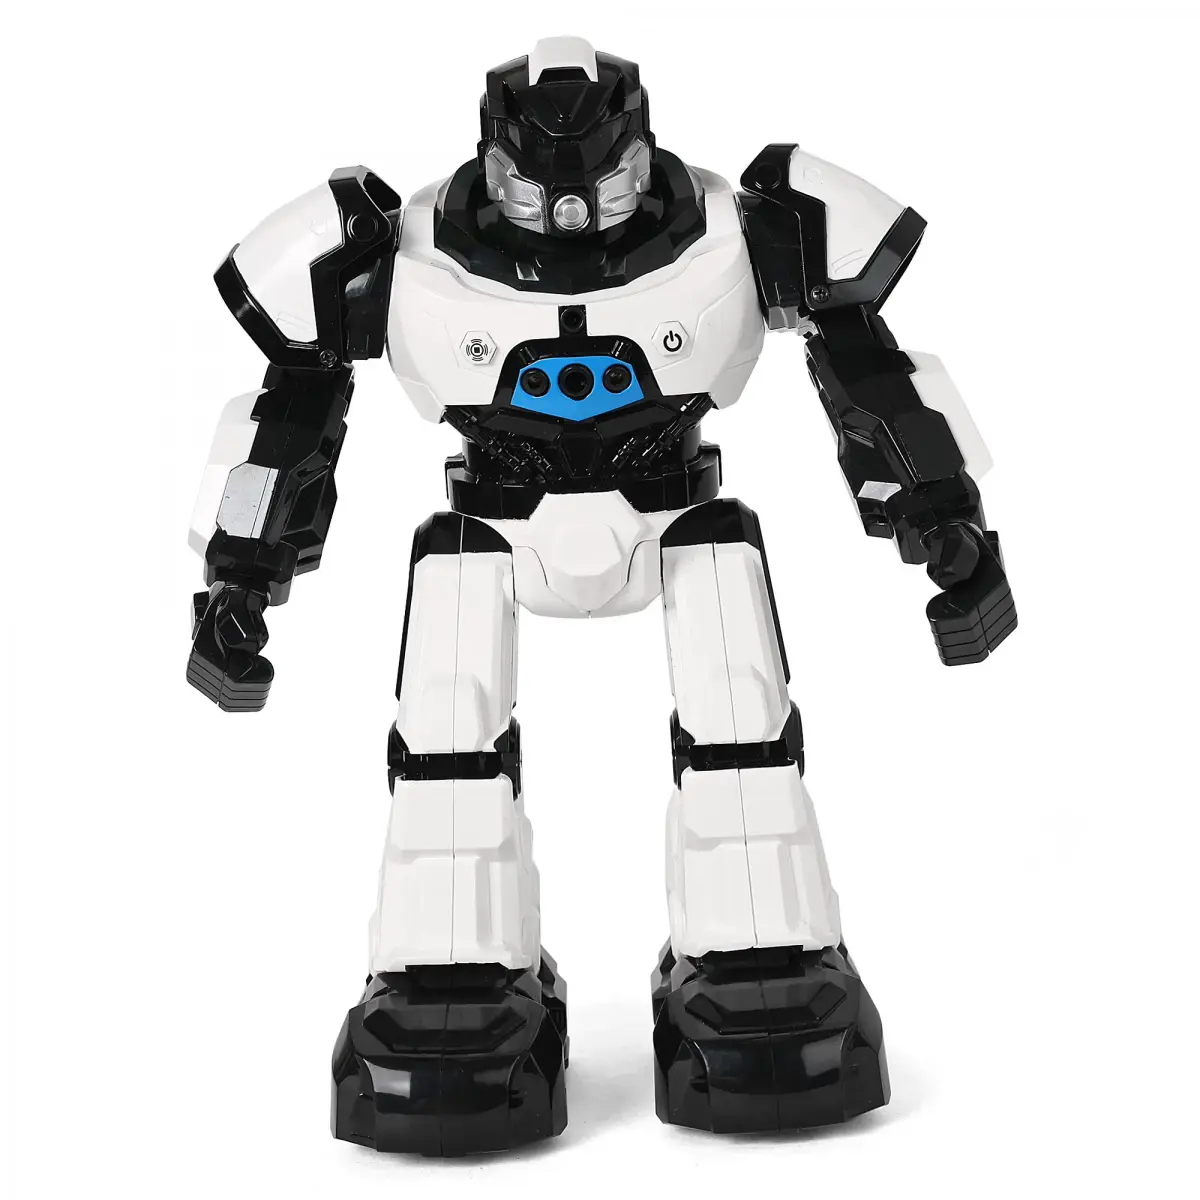 Ralleyz Crazone Intelligent Robot, 8Y+, Black & White